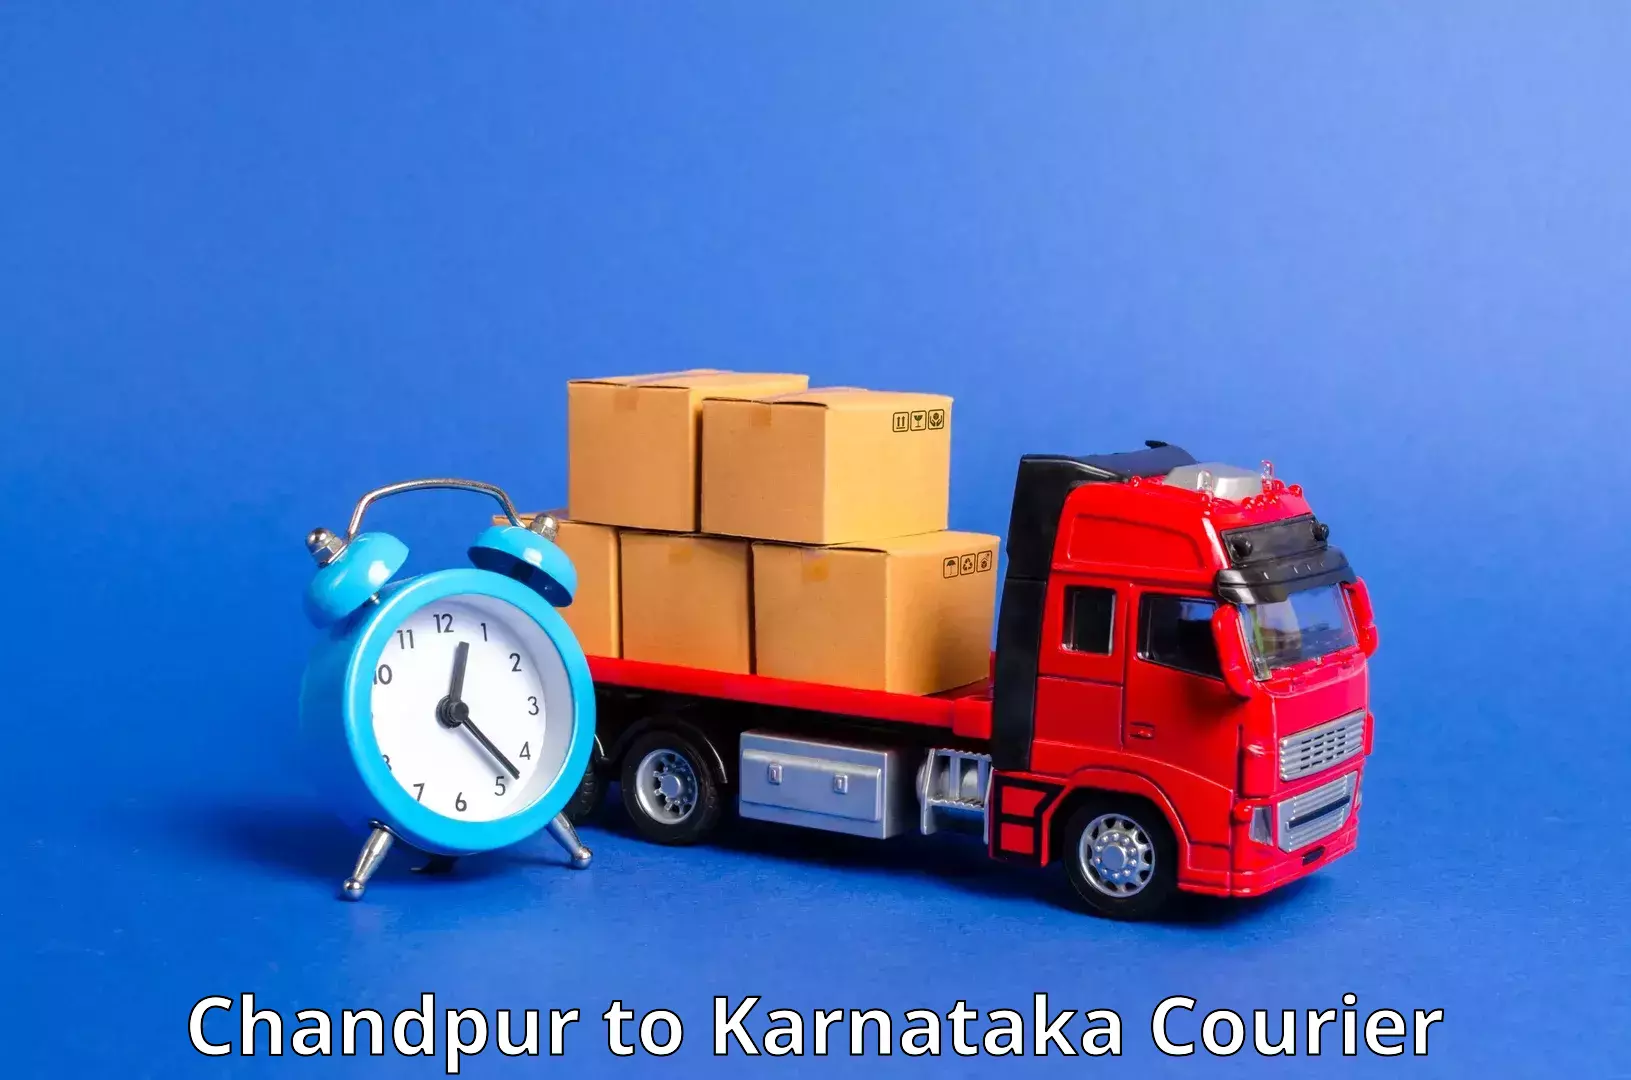 Next-generation courier services Chandpur to Molakalmuru